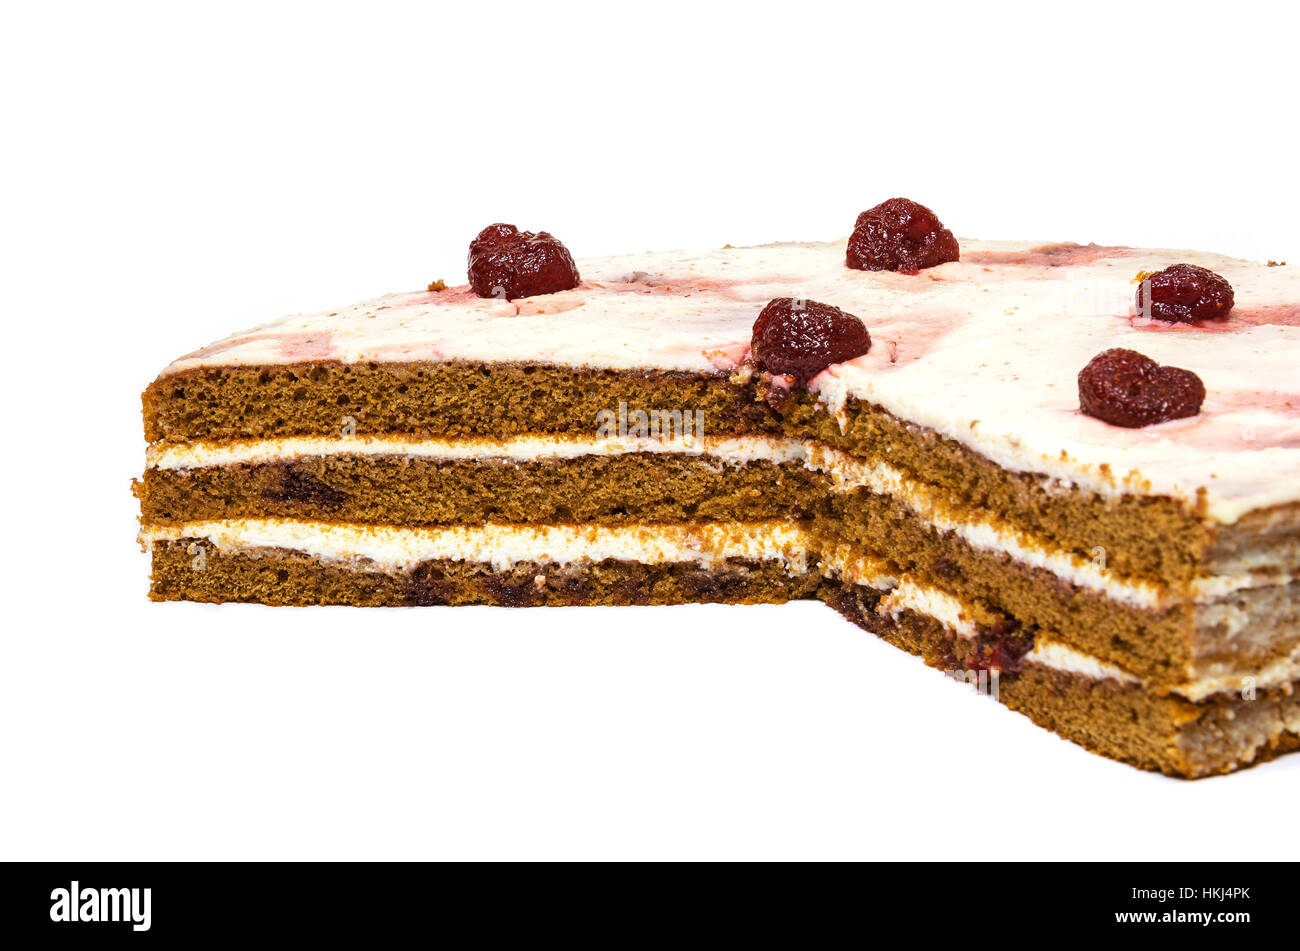 Su uno sfondo bianco fette di torta al cioccolato di torte a base di pan di spagna con le fragole Foto Stock